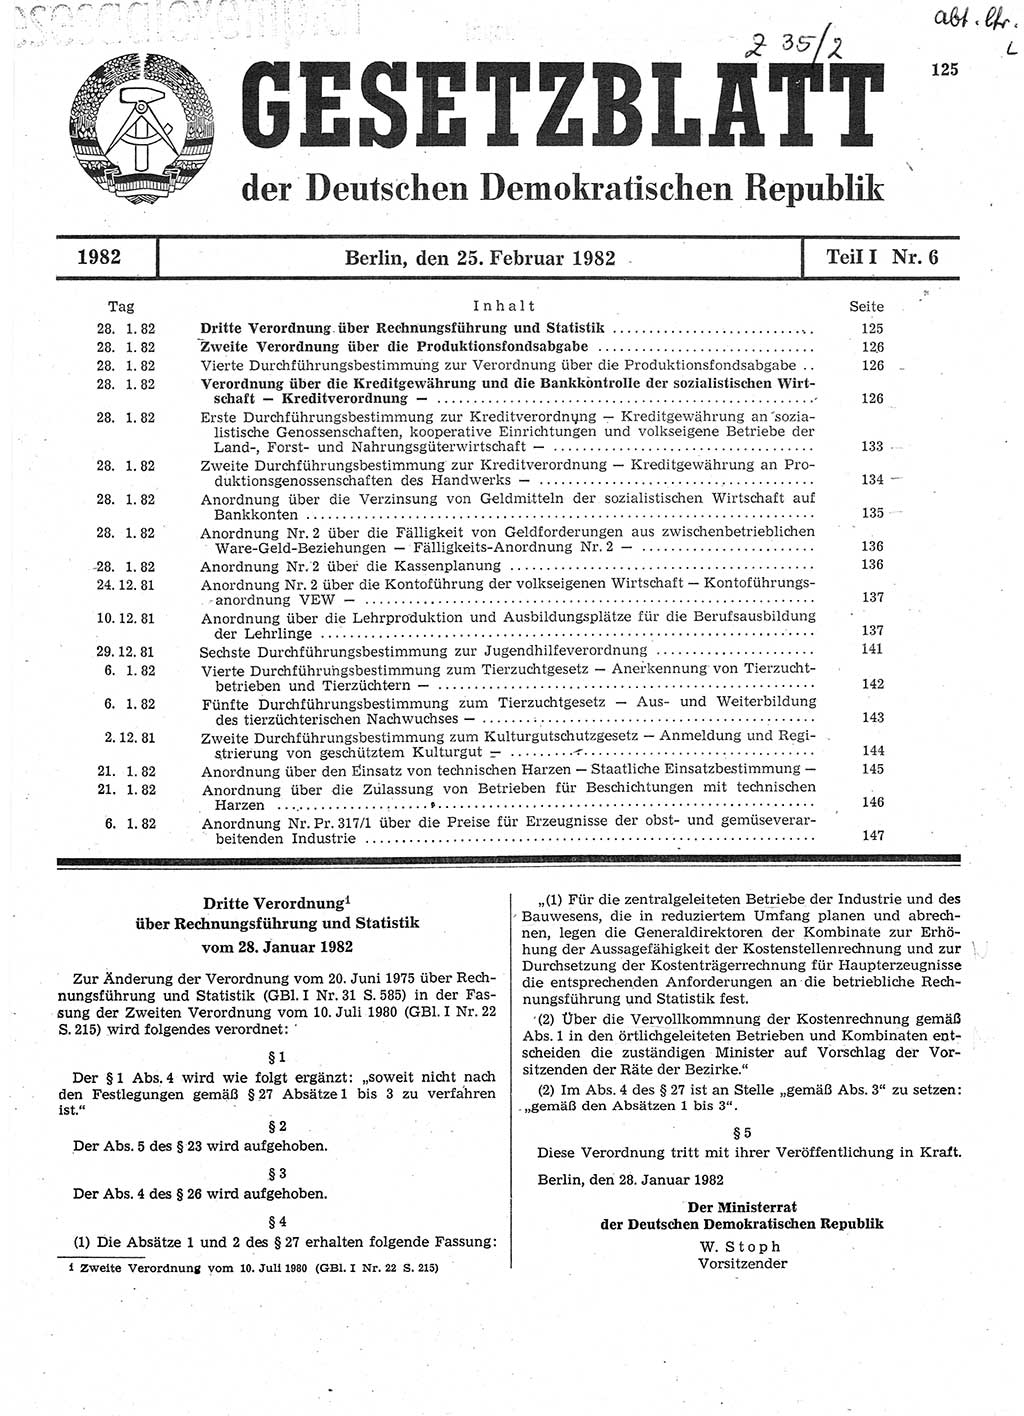 Gesetzblatt (GBl.) der Deutschen Demokratischen Republik (DDR) Teil Ⅰ 1982, Seite 125 (GBl. DDR Ⅰ 1982, S. 125)